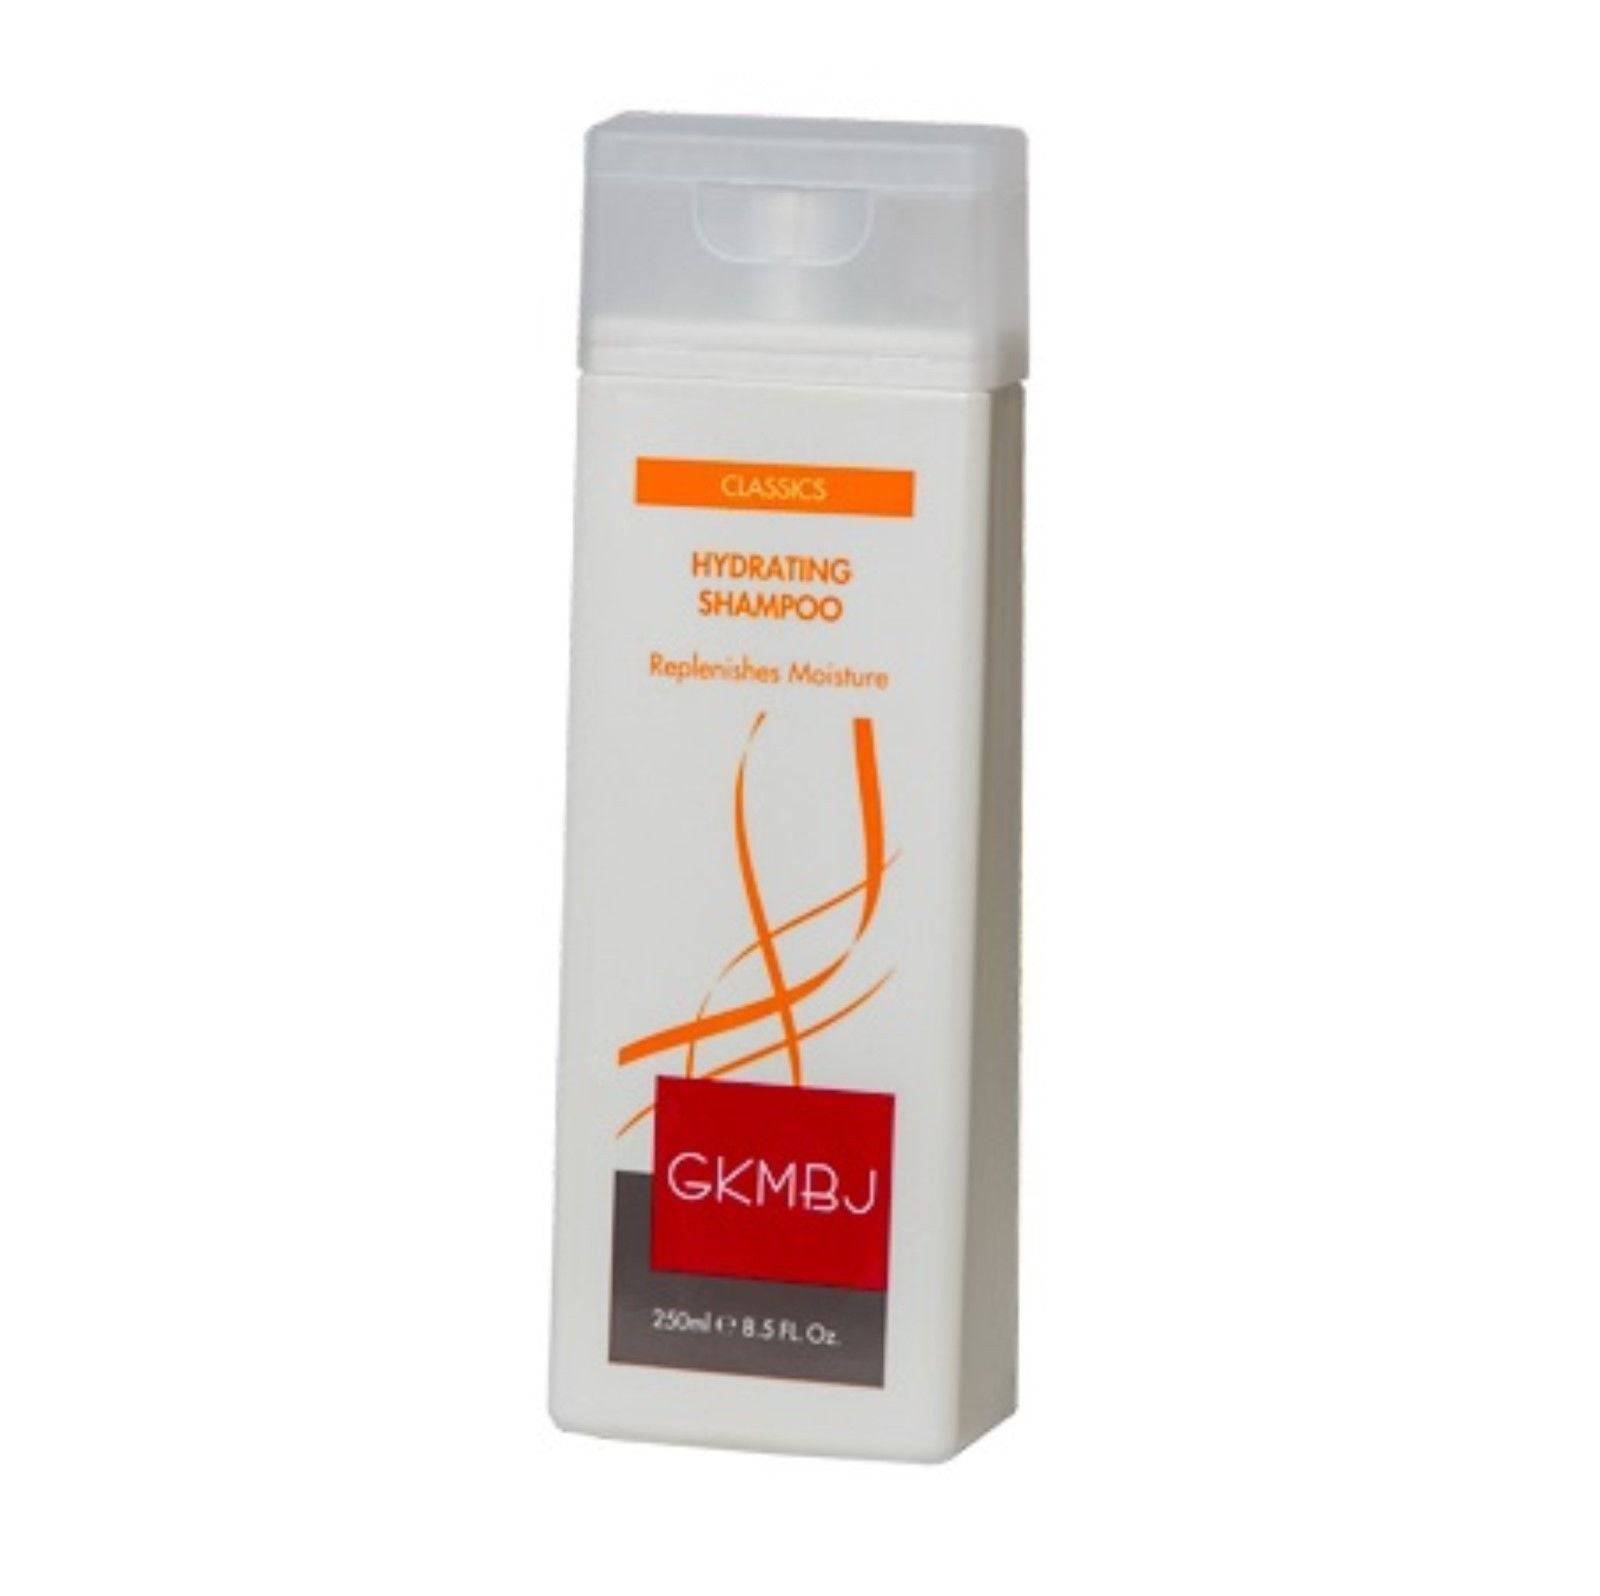 GKMBJ Hydrating Shampoo 250ml Replenishes  Moisture GKMBJ - On Line Hair Depot